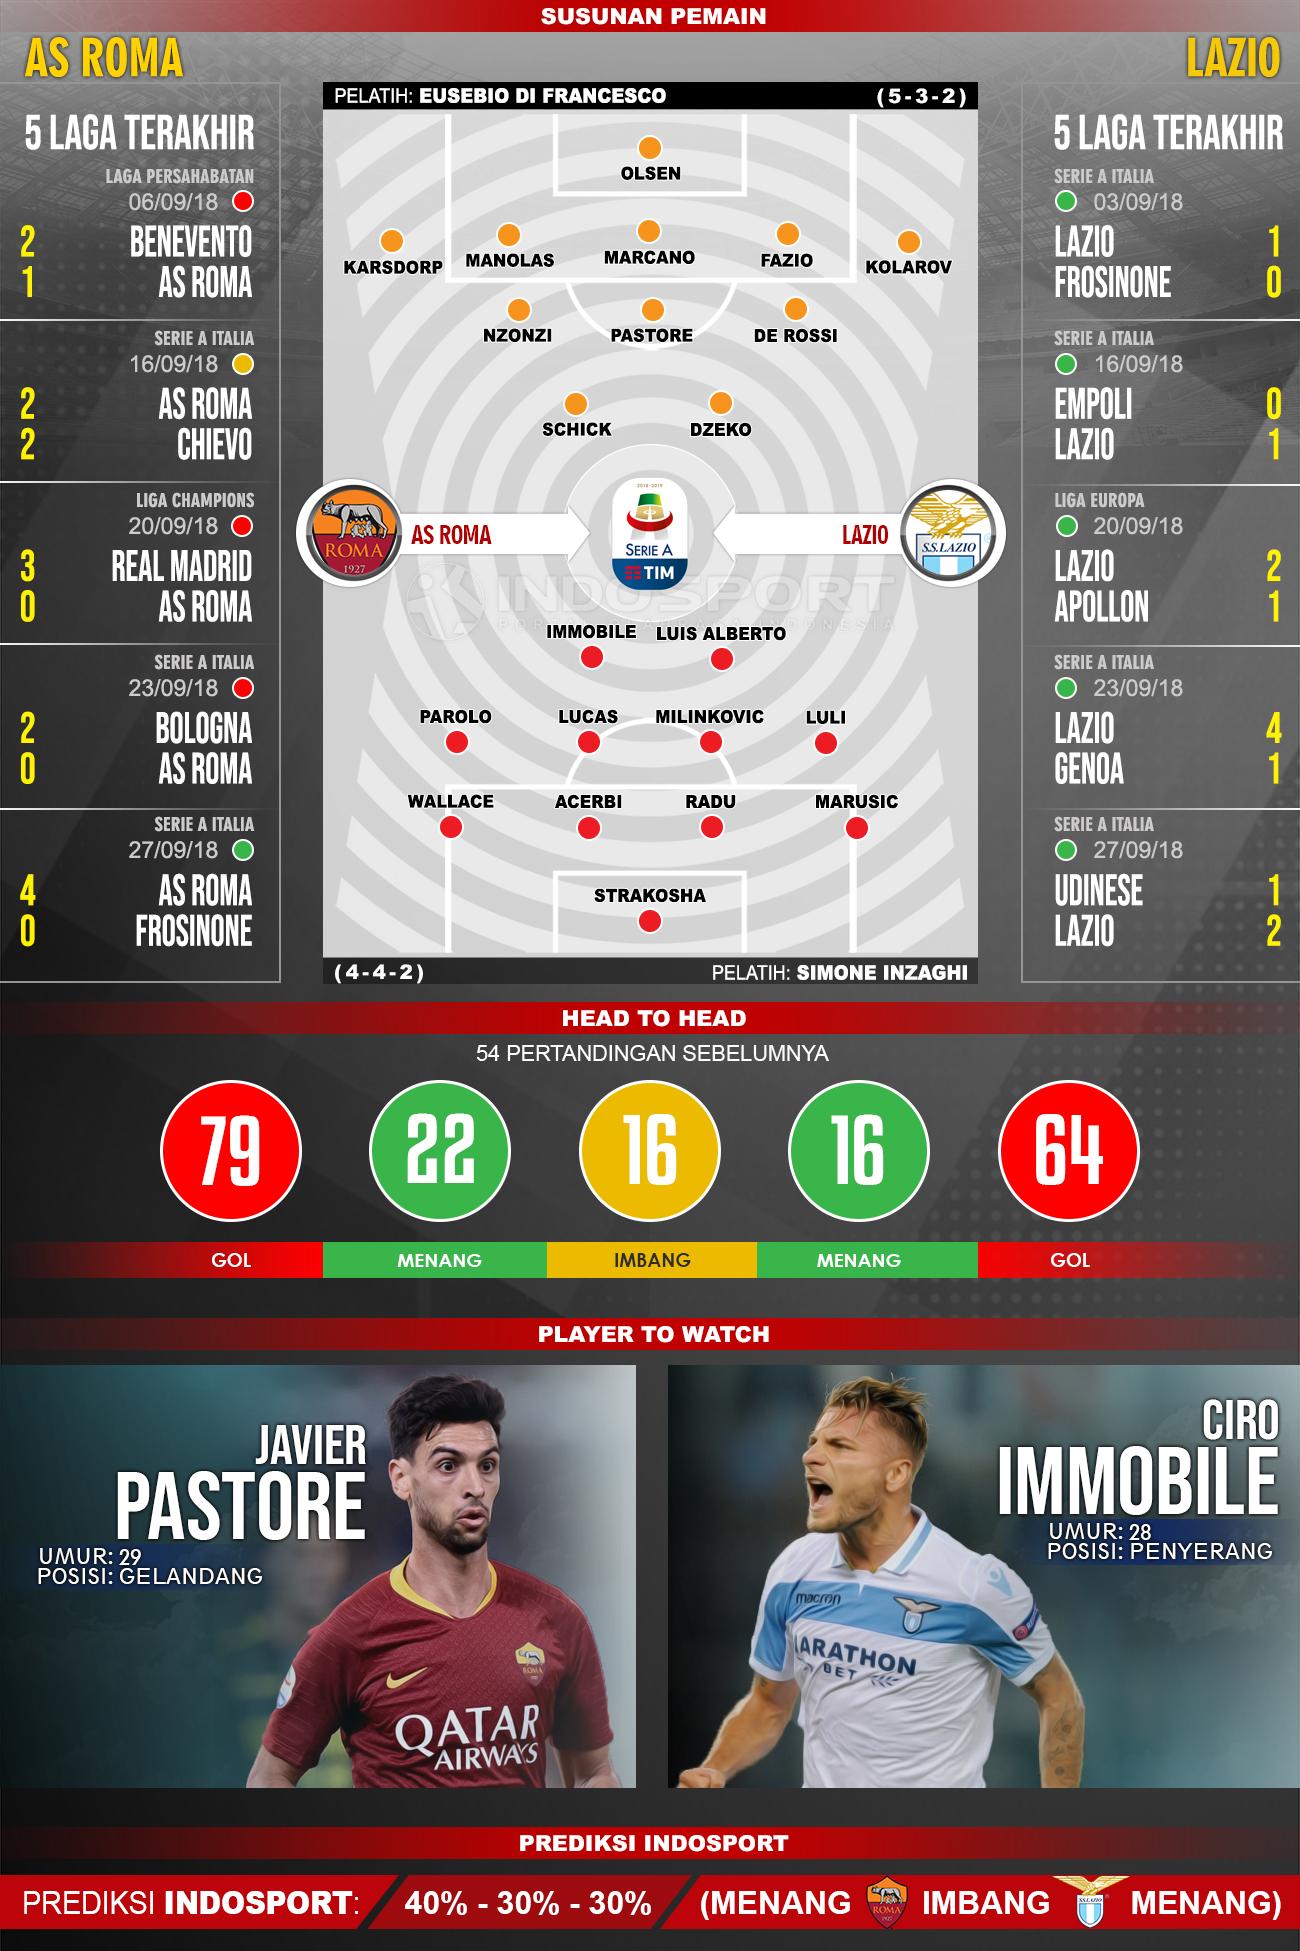 AS Roma vs Lazio (Susunan Pemain - Lima Laga Terakhir - Player to Watch - Prediksi Indosport) Copyright: INDOSPORT